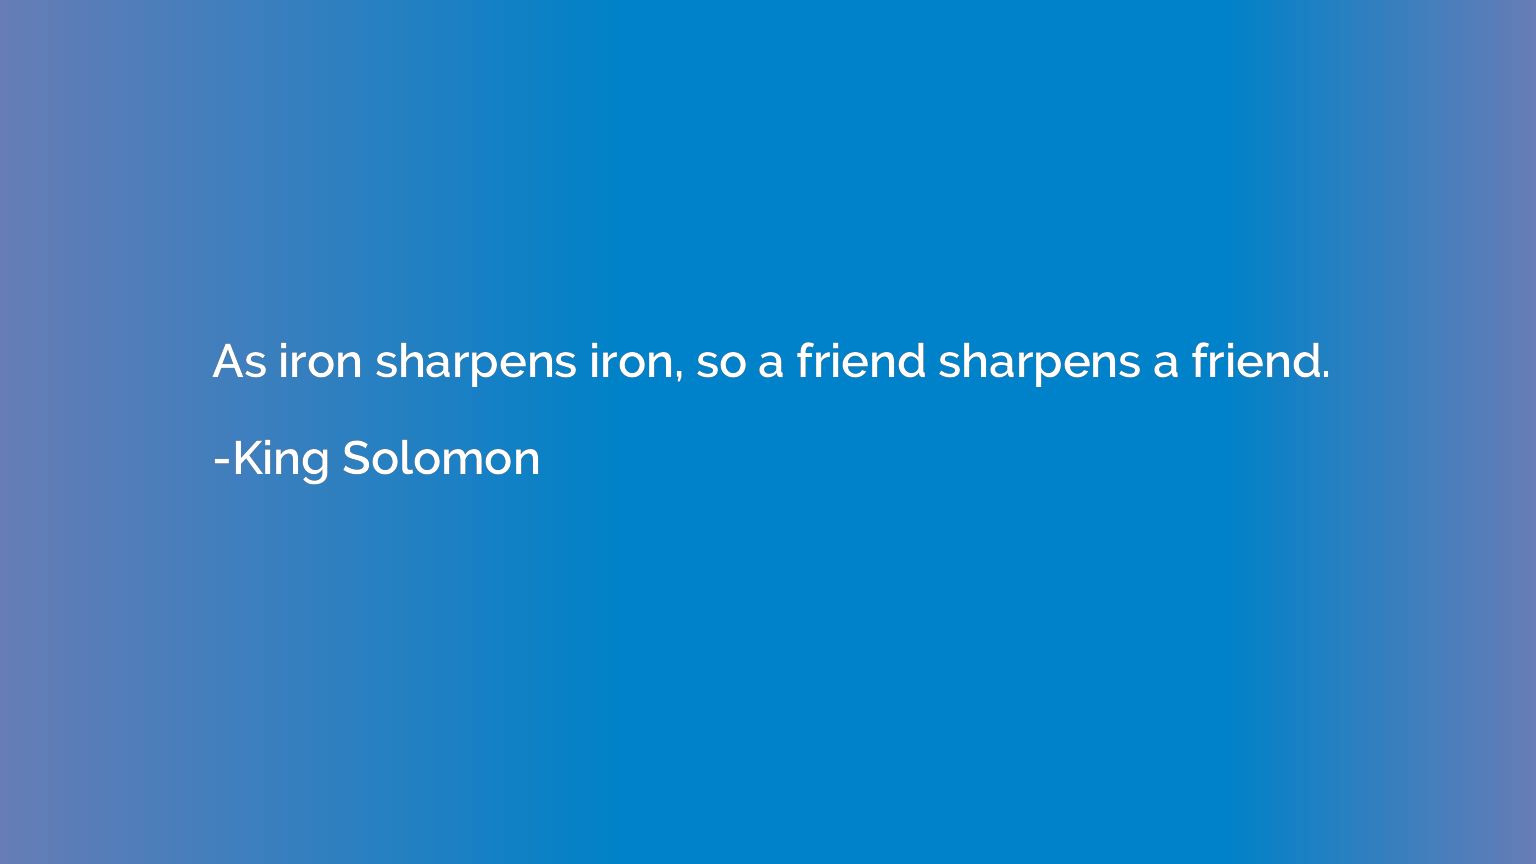 As iron sharpens iron, so a friend sharpens a friend.